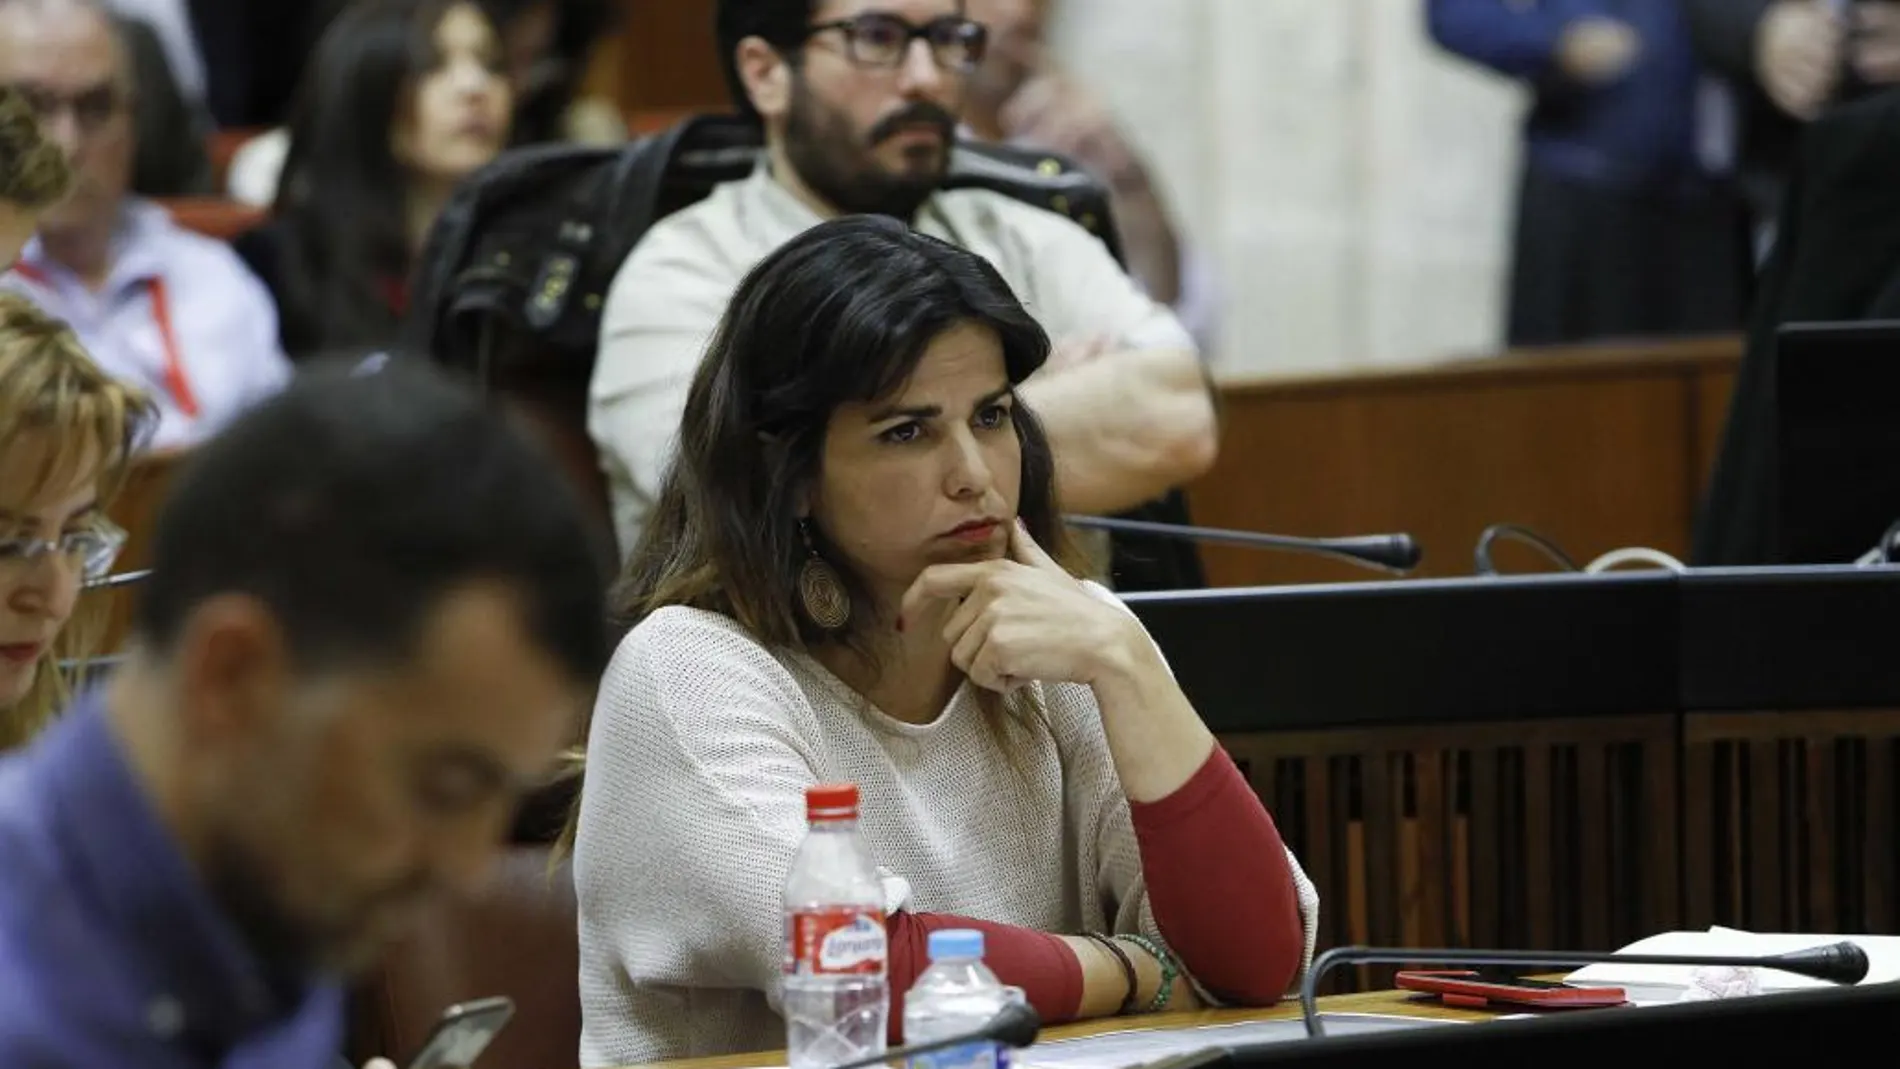 La líder de Podemos en Andalucía, Teresa Rodríguez